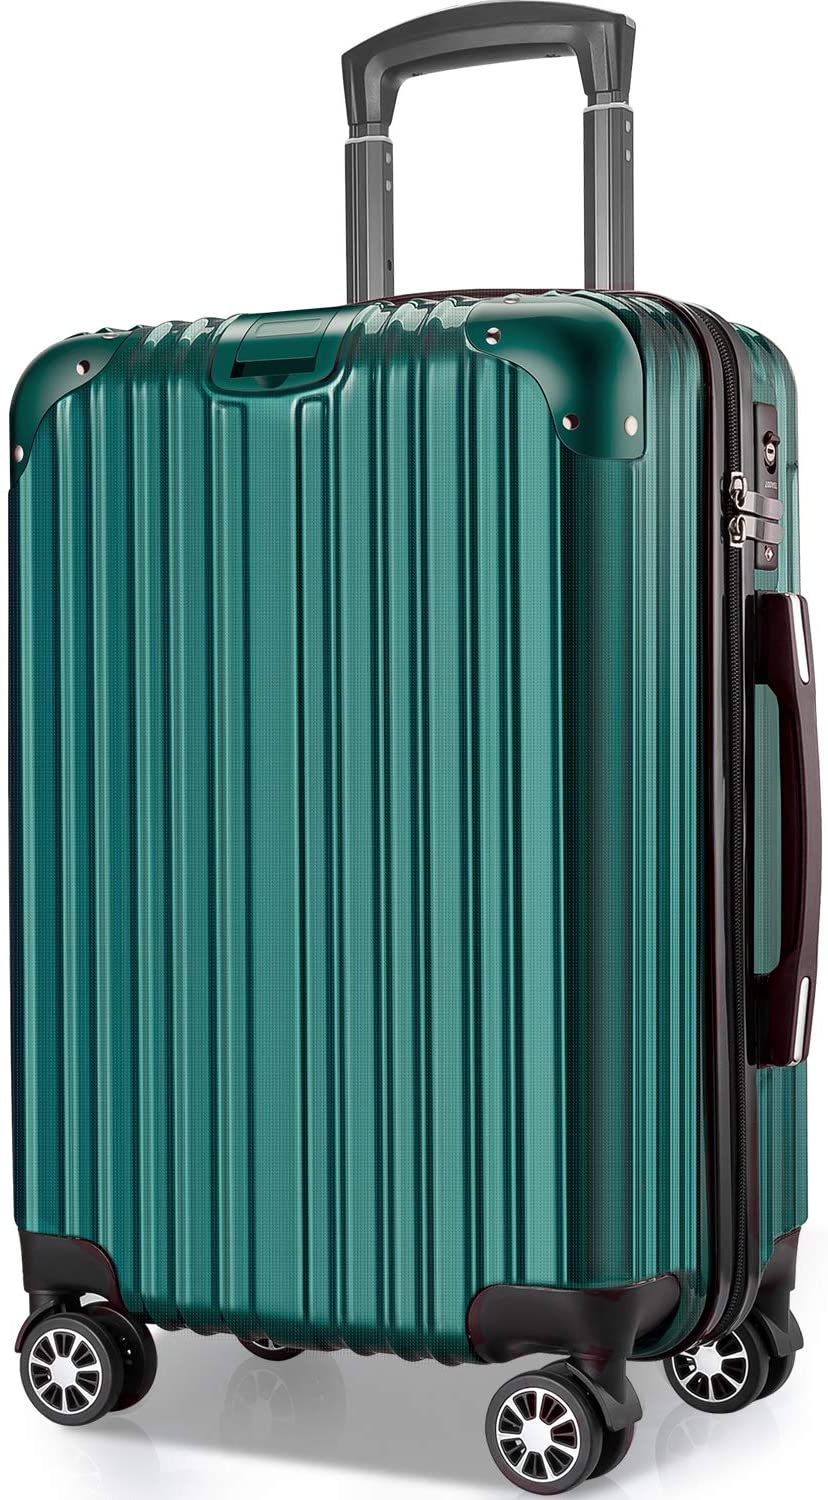 スーツケース L サイズ 98L キャリーバッグ キャリーケース 超軽量 